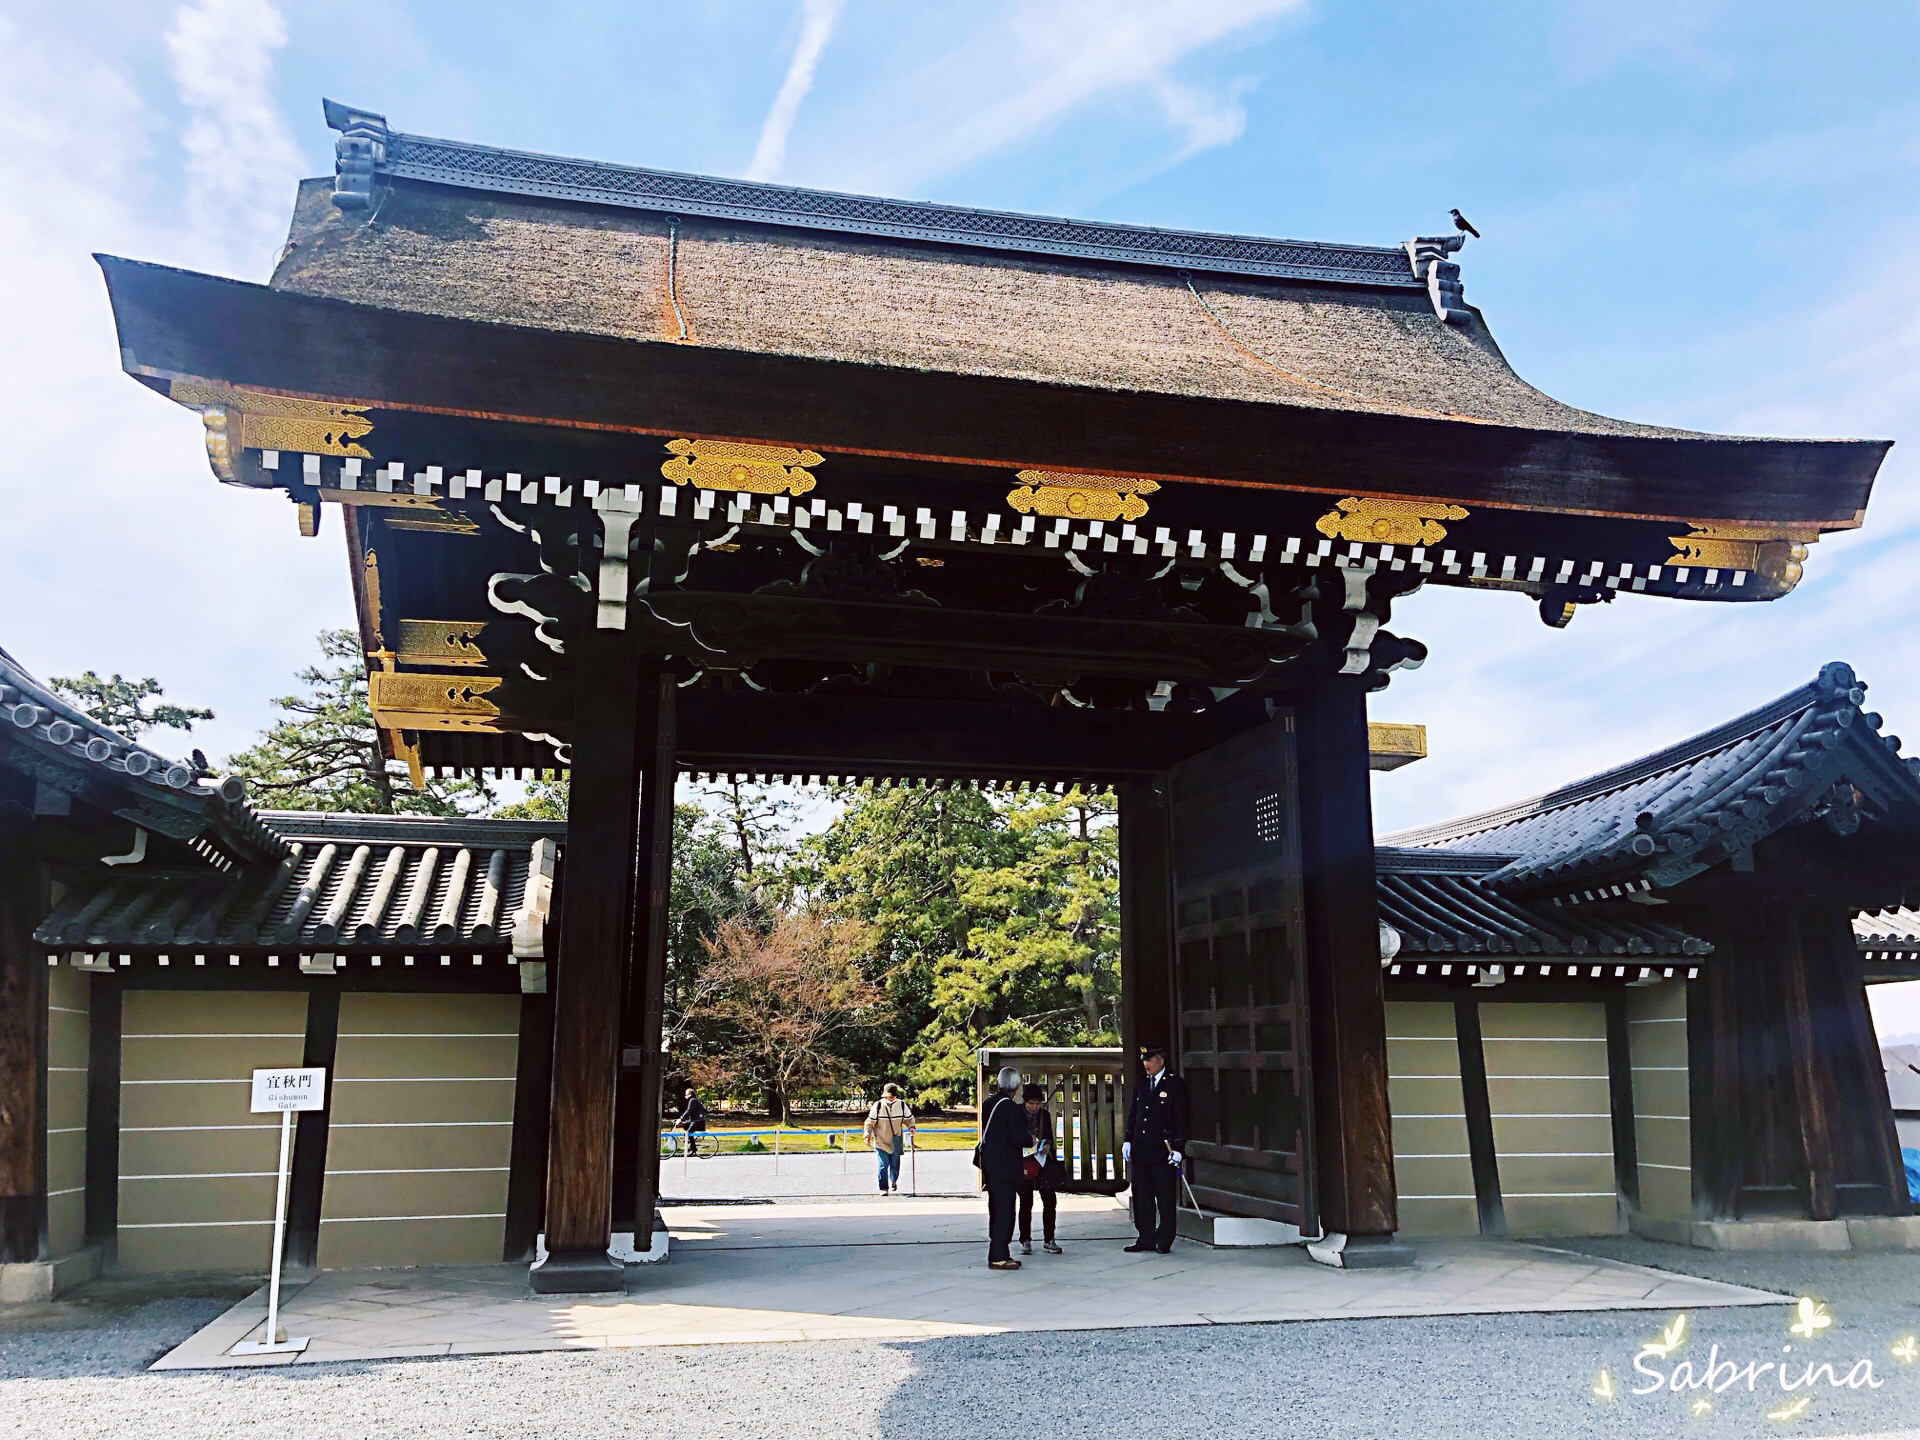 【日本·京都·京都御所】 天皇的行宫，去京都必打卡的地方。从二条城出来乘坐地铁可到，需换乘。京都御所